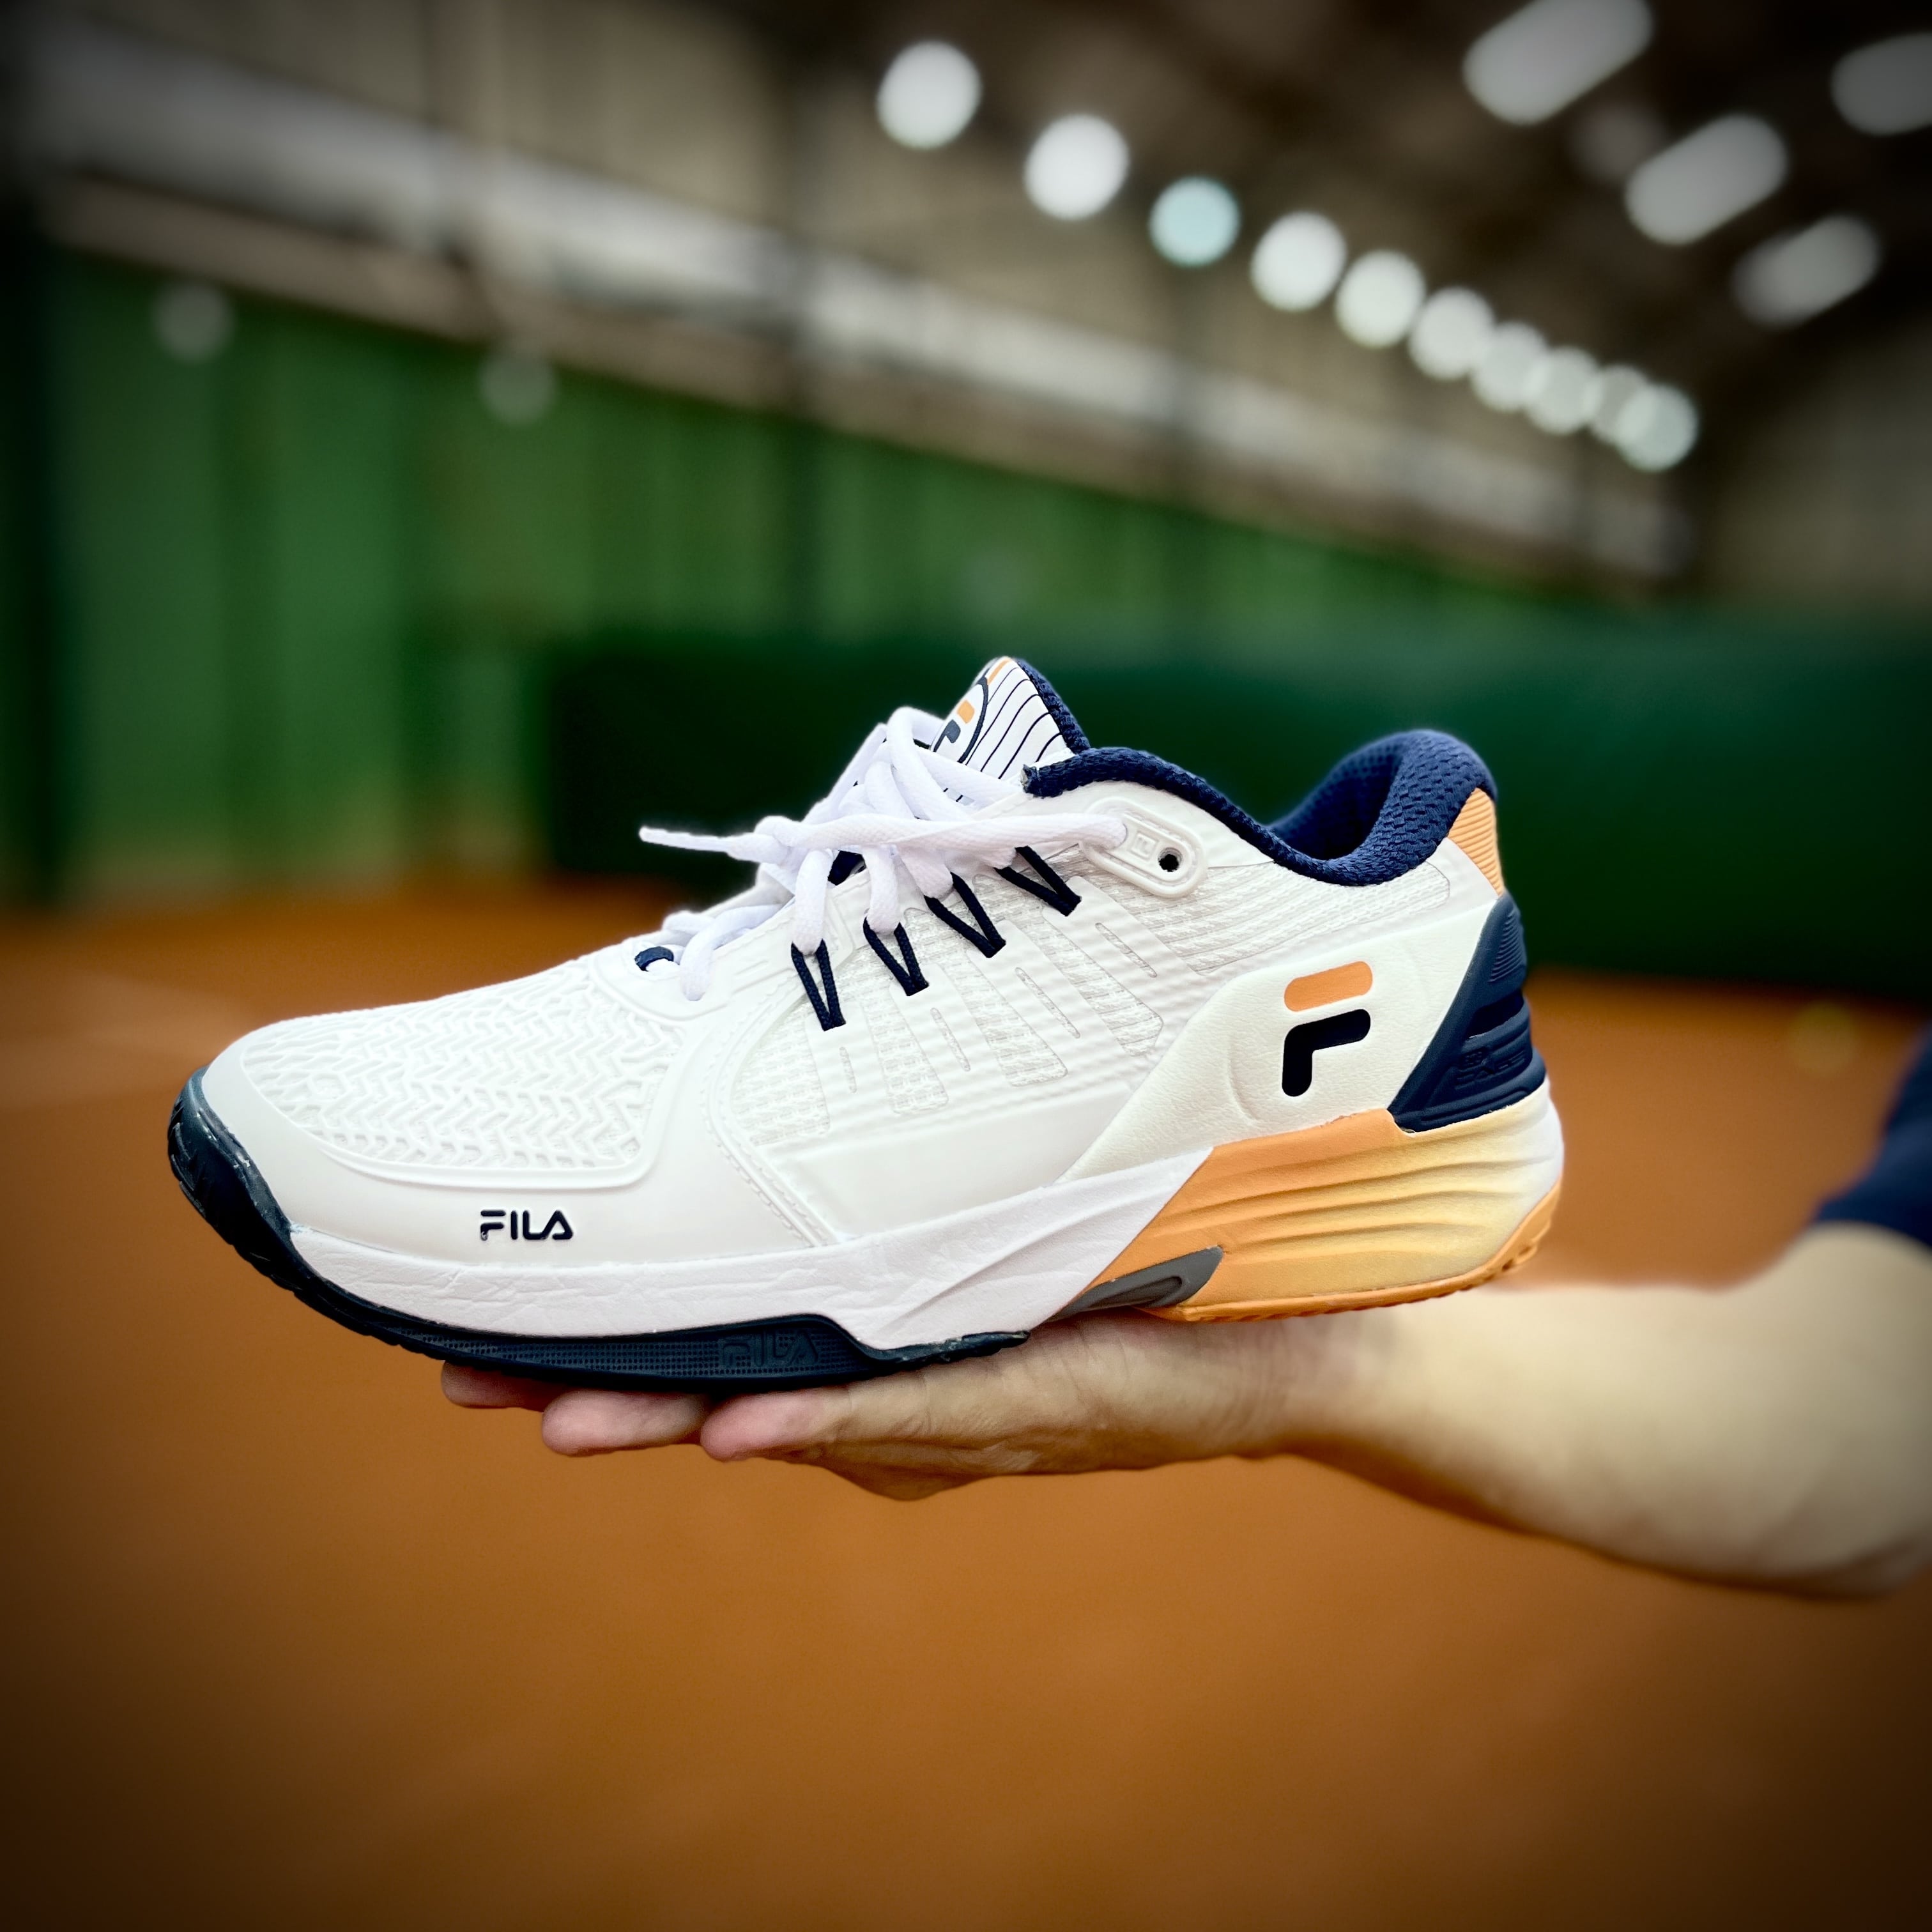 Review: Testamos o calçado Fila Float Verve para jogar tênis no